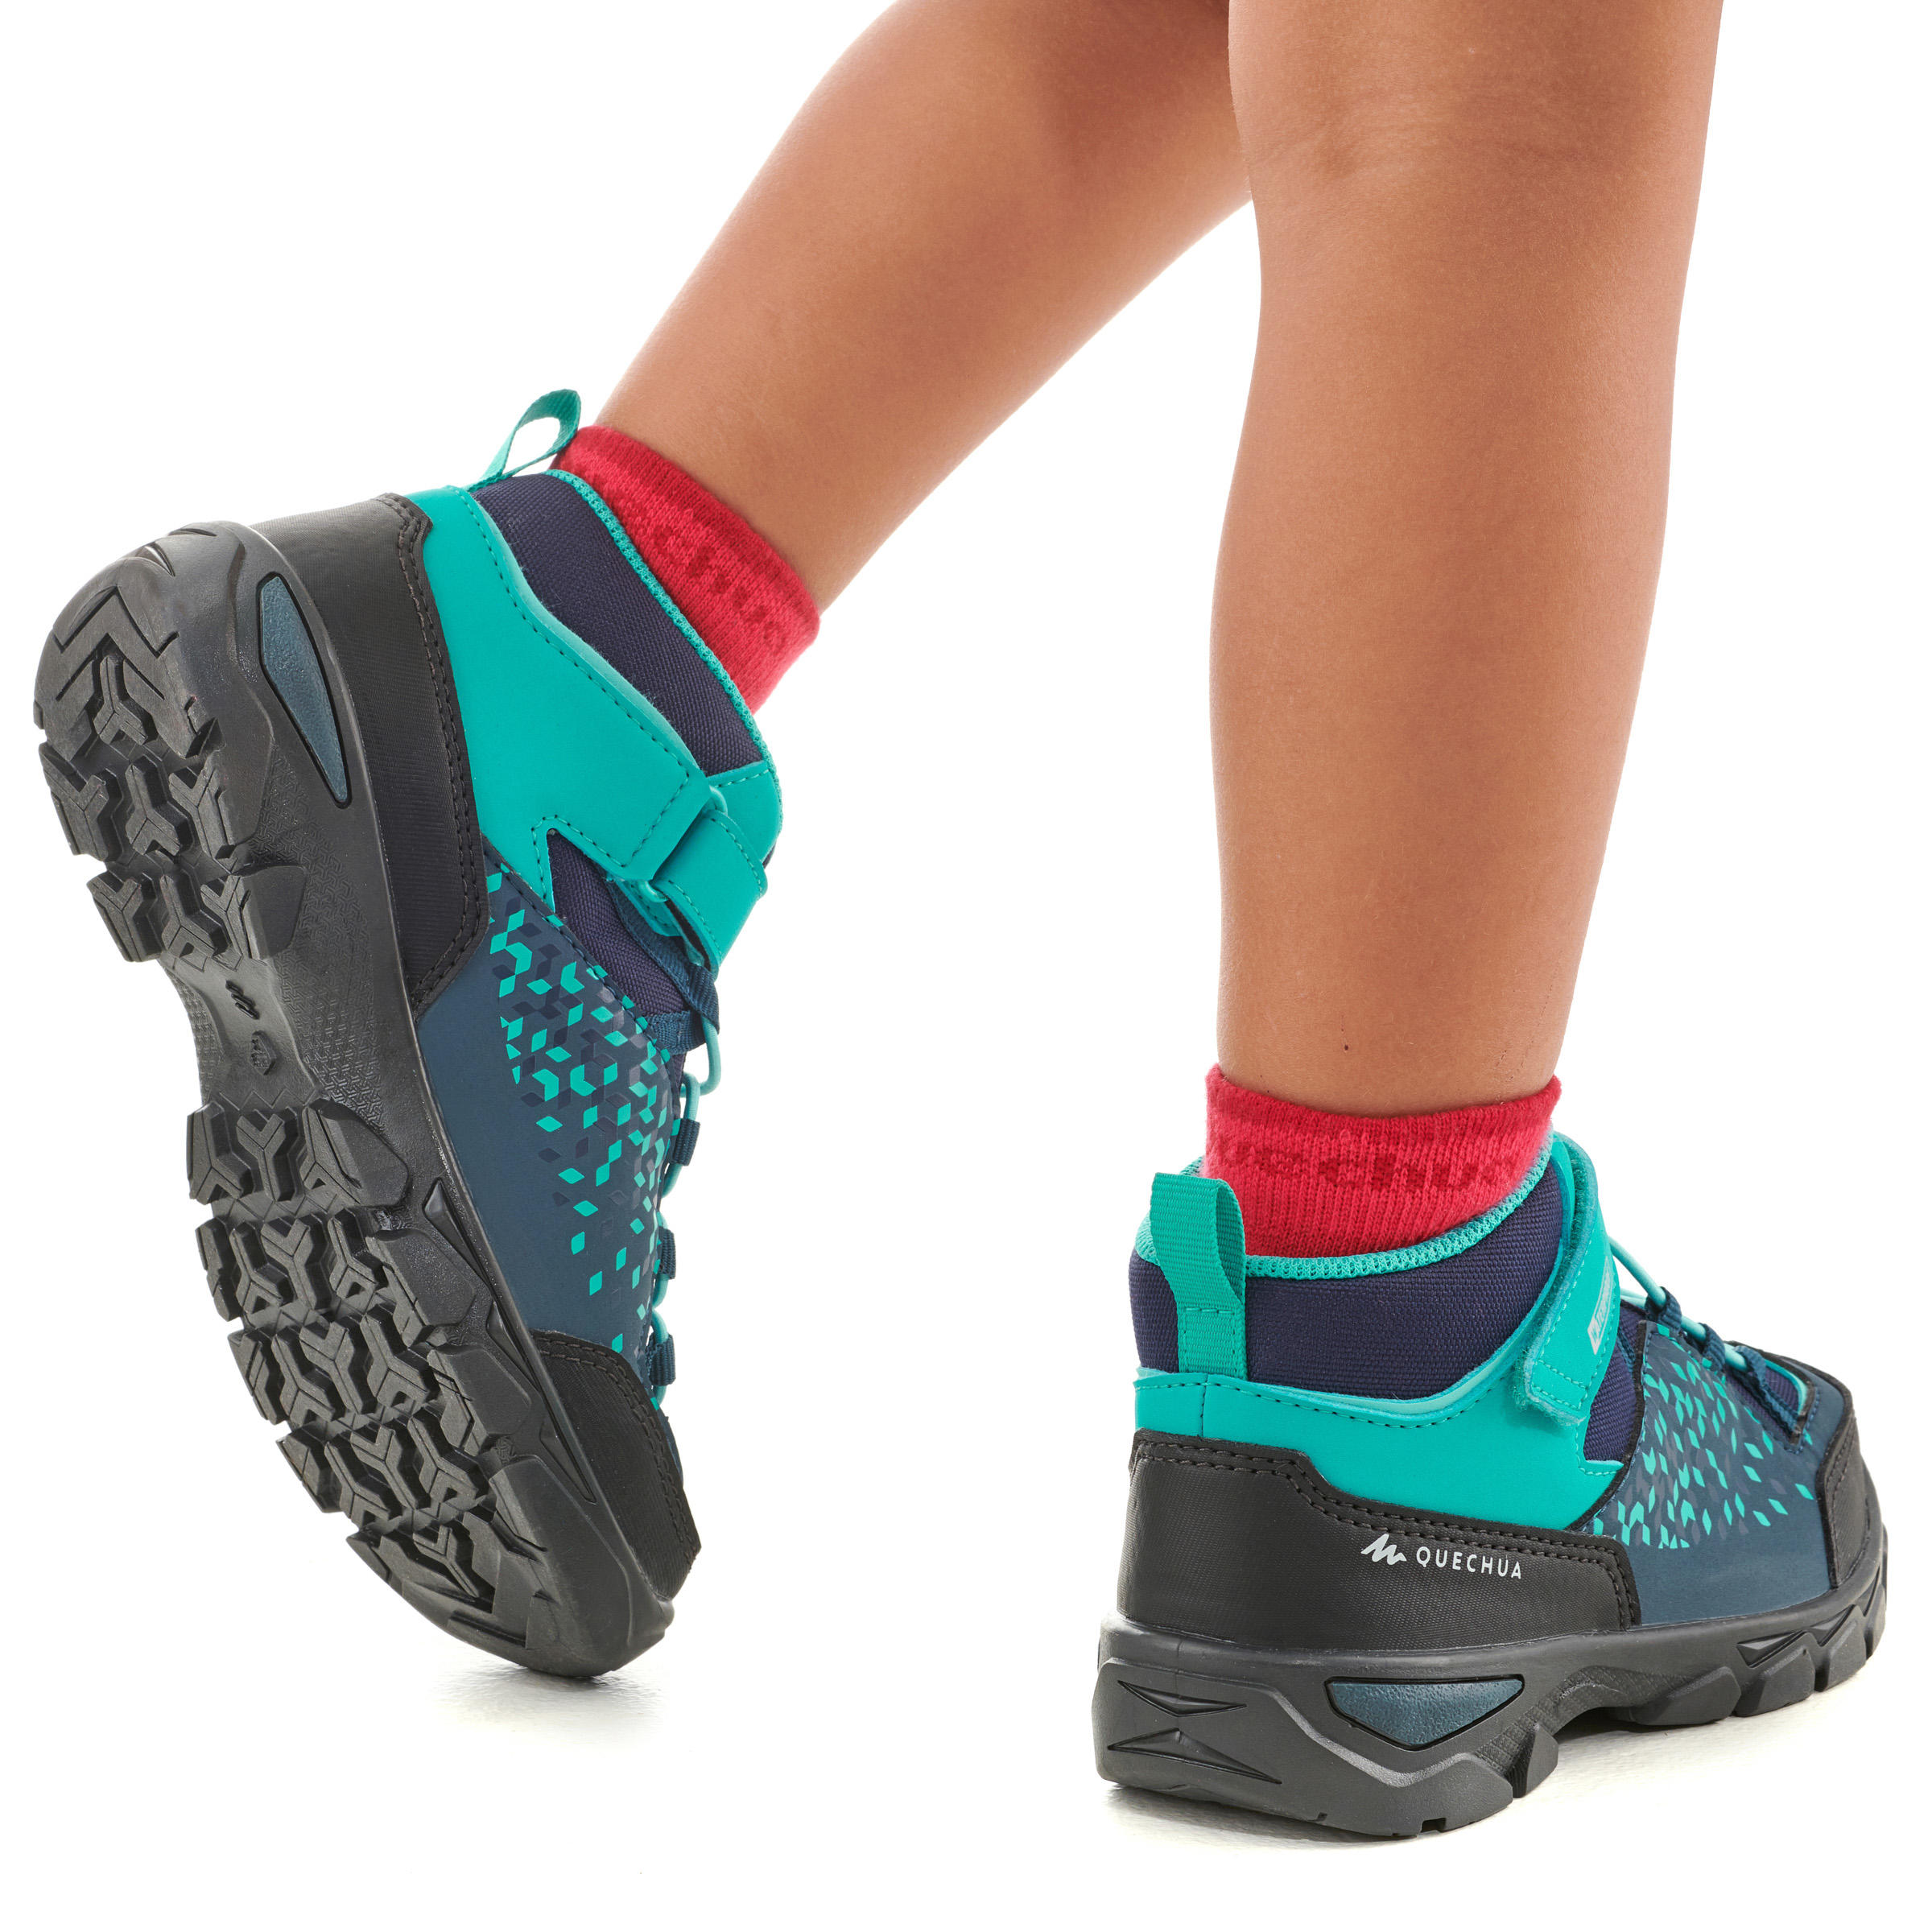 Chaussures randonnée enfant - MH120 turquoise - QUECHUA